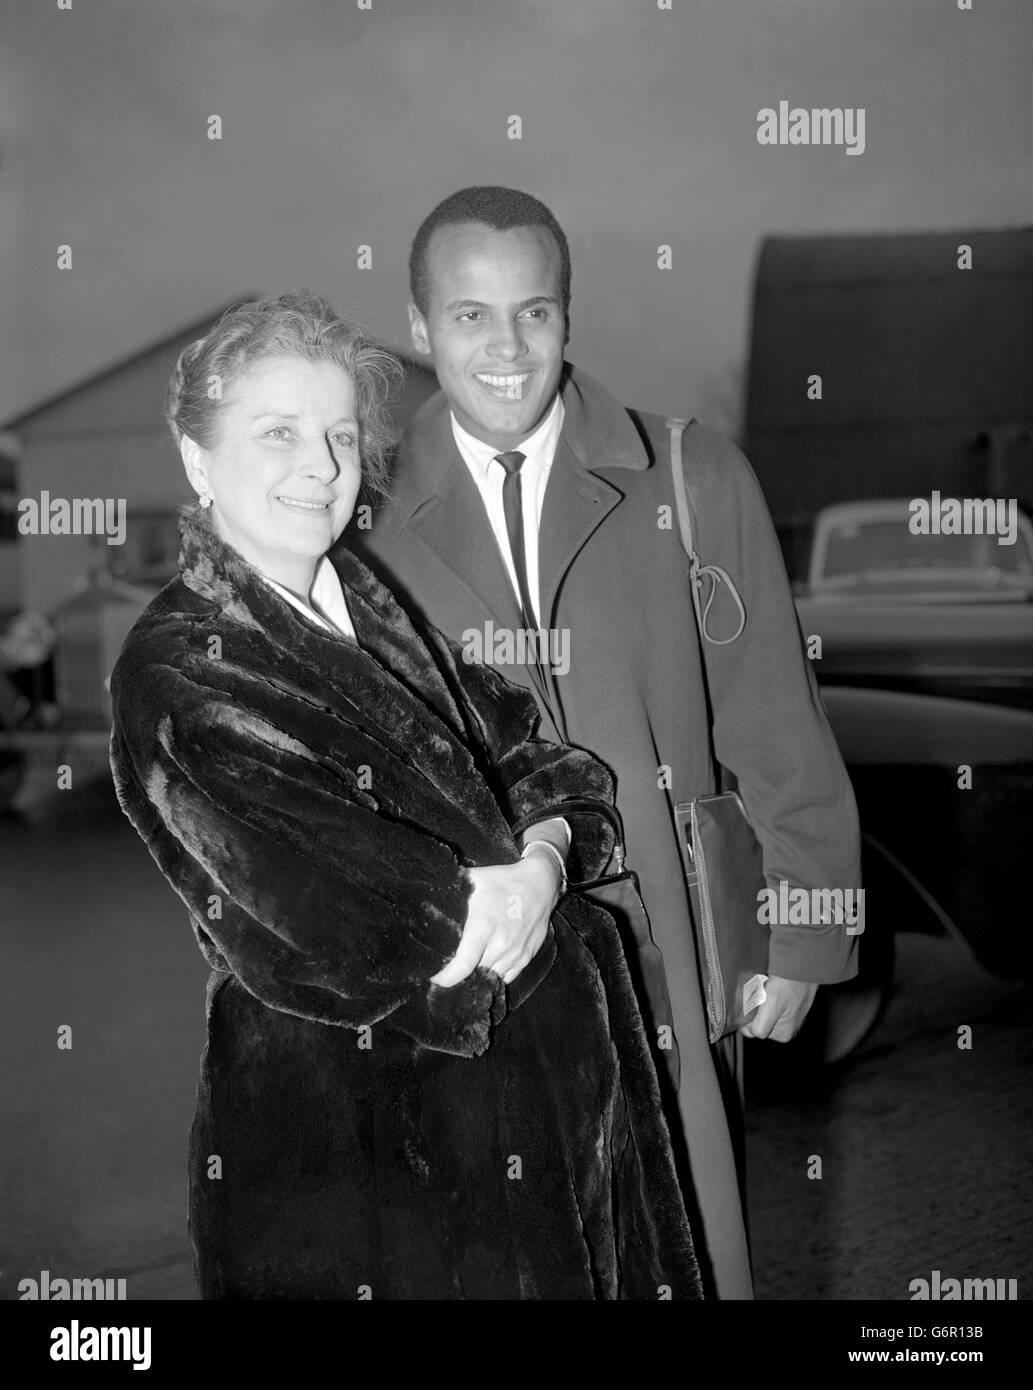 Der Schauspieler Harry Belafonte wird von der britischen Schauspielerin Diana Wynyard bei seiner Ankunft am Flughafen London aus New York begrüßt. Er ist hier, um seine Rolle in Darryl F. Zanucks „Island in the Sun“ nach sieben Wochen Standortarbeit in den Britischen Westindischen Inseln zu vervollständigen. Dies ist Mr.Belafontes erster Besuch in London, und Miss Wynyard - die zu den Stars des Films zählt - dachte, es wäre schön, ihn bei seiner Ankunft zu treffen. Stockfoto